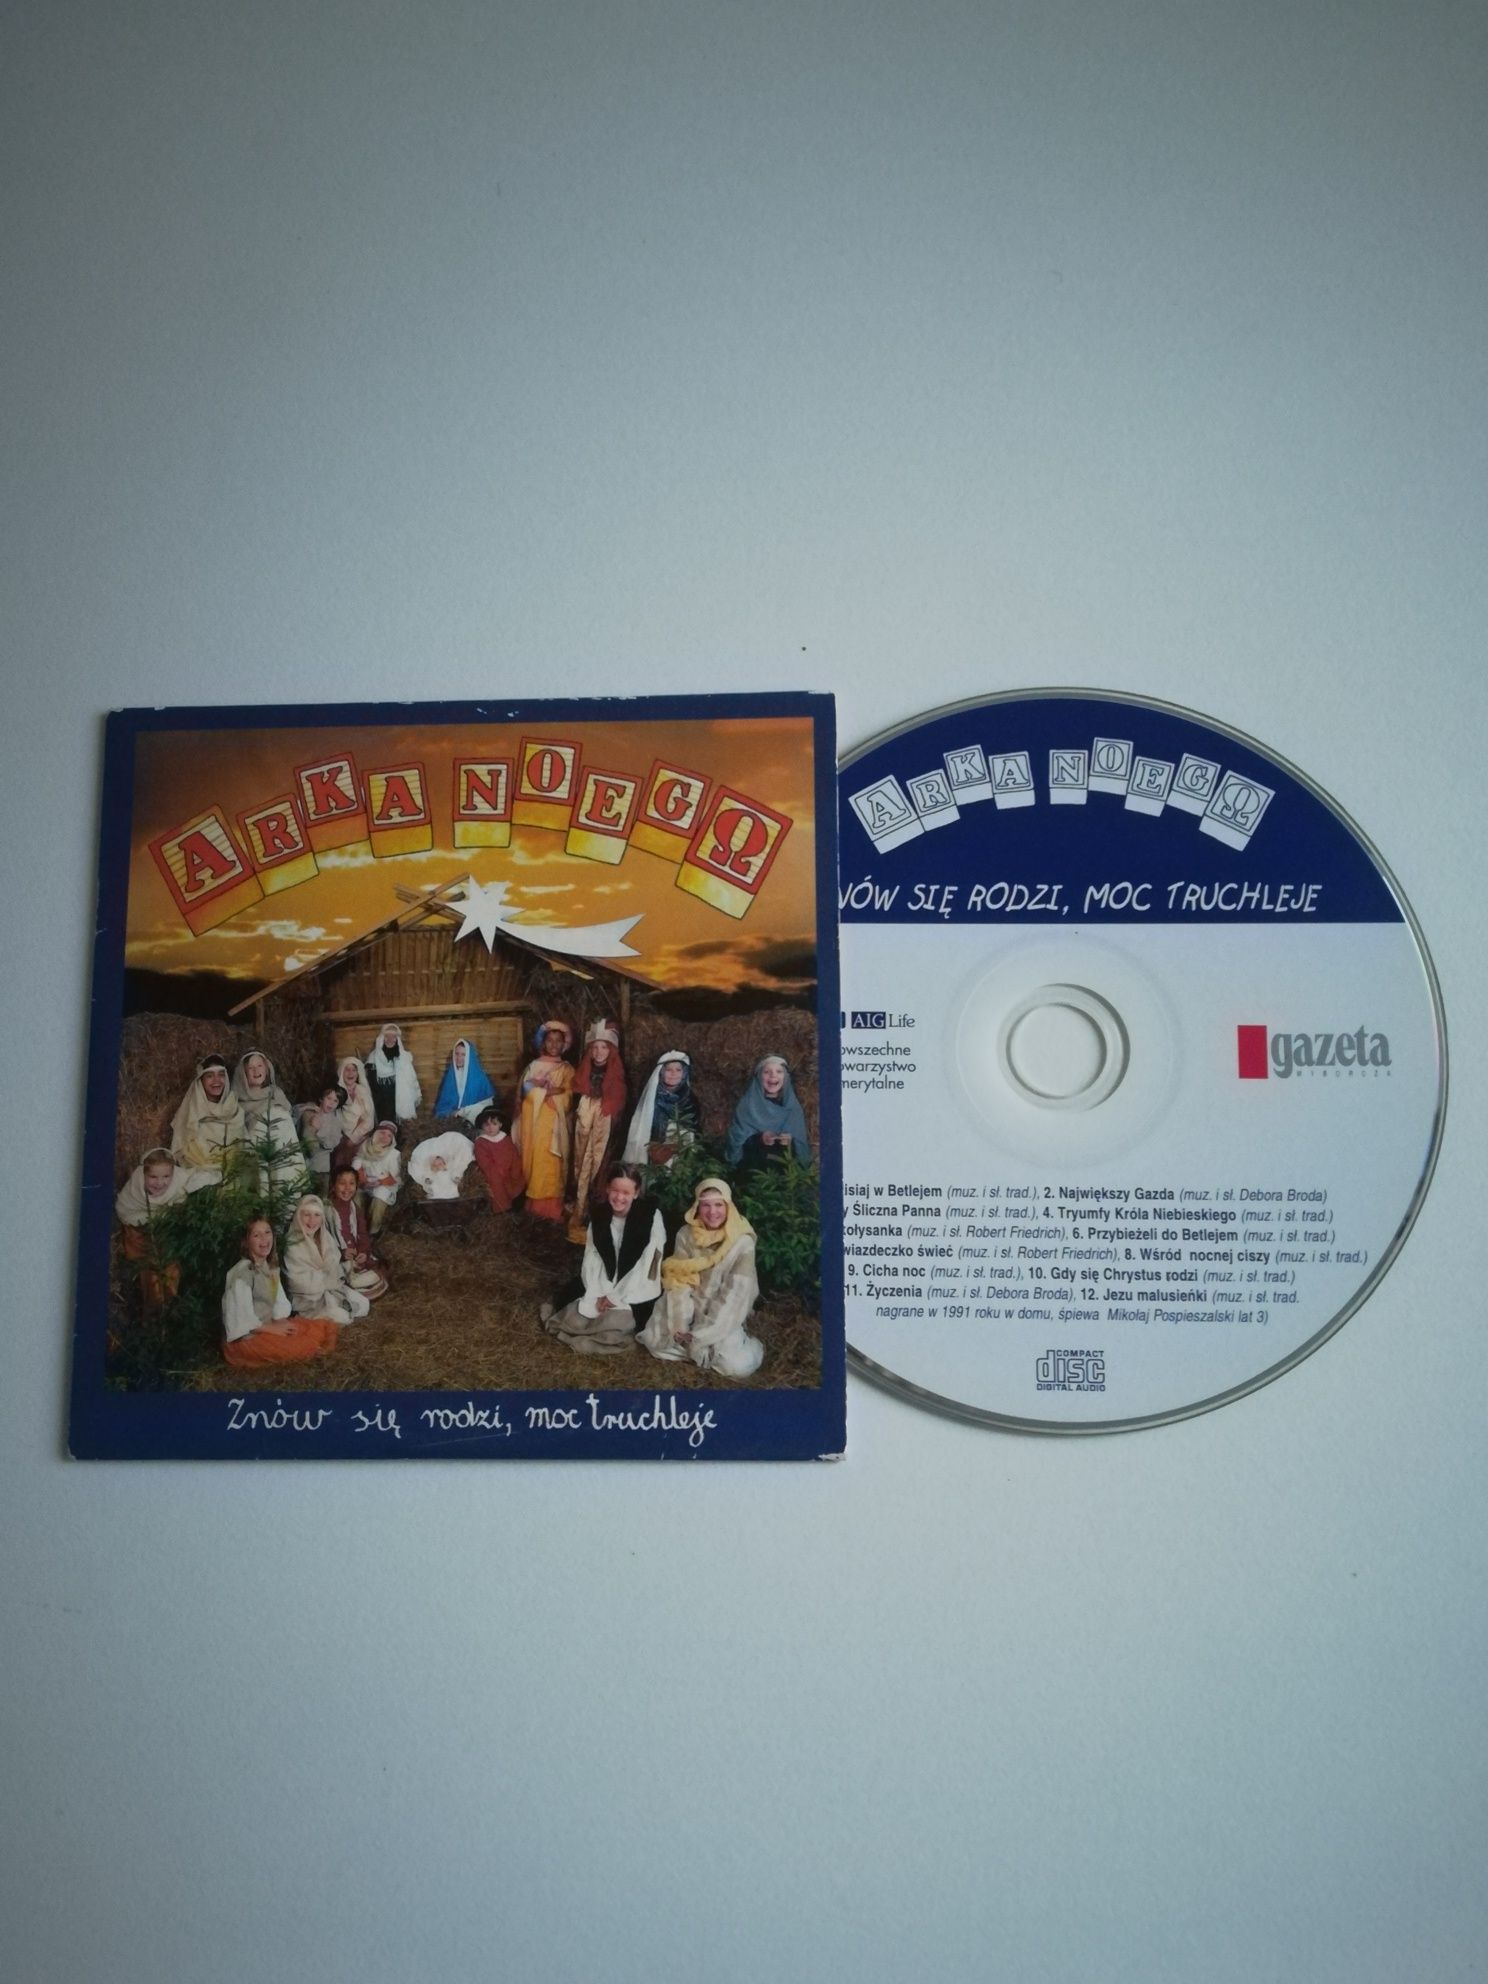 Arka Noego Znów się rodzi moc Truchleje płyta CD z kolędami